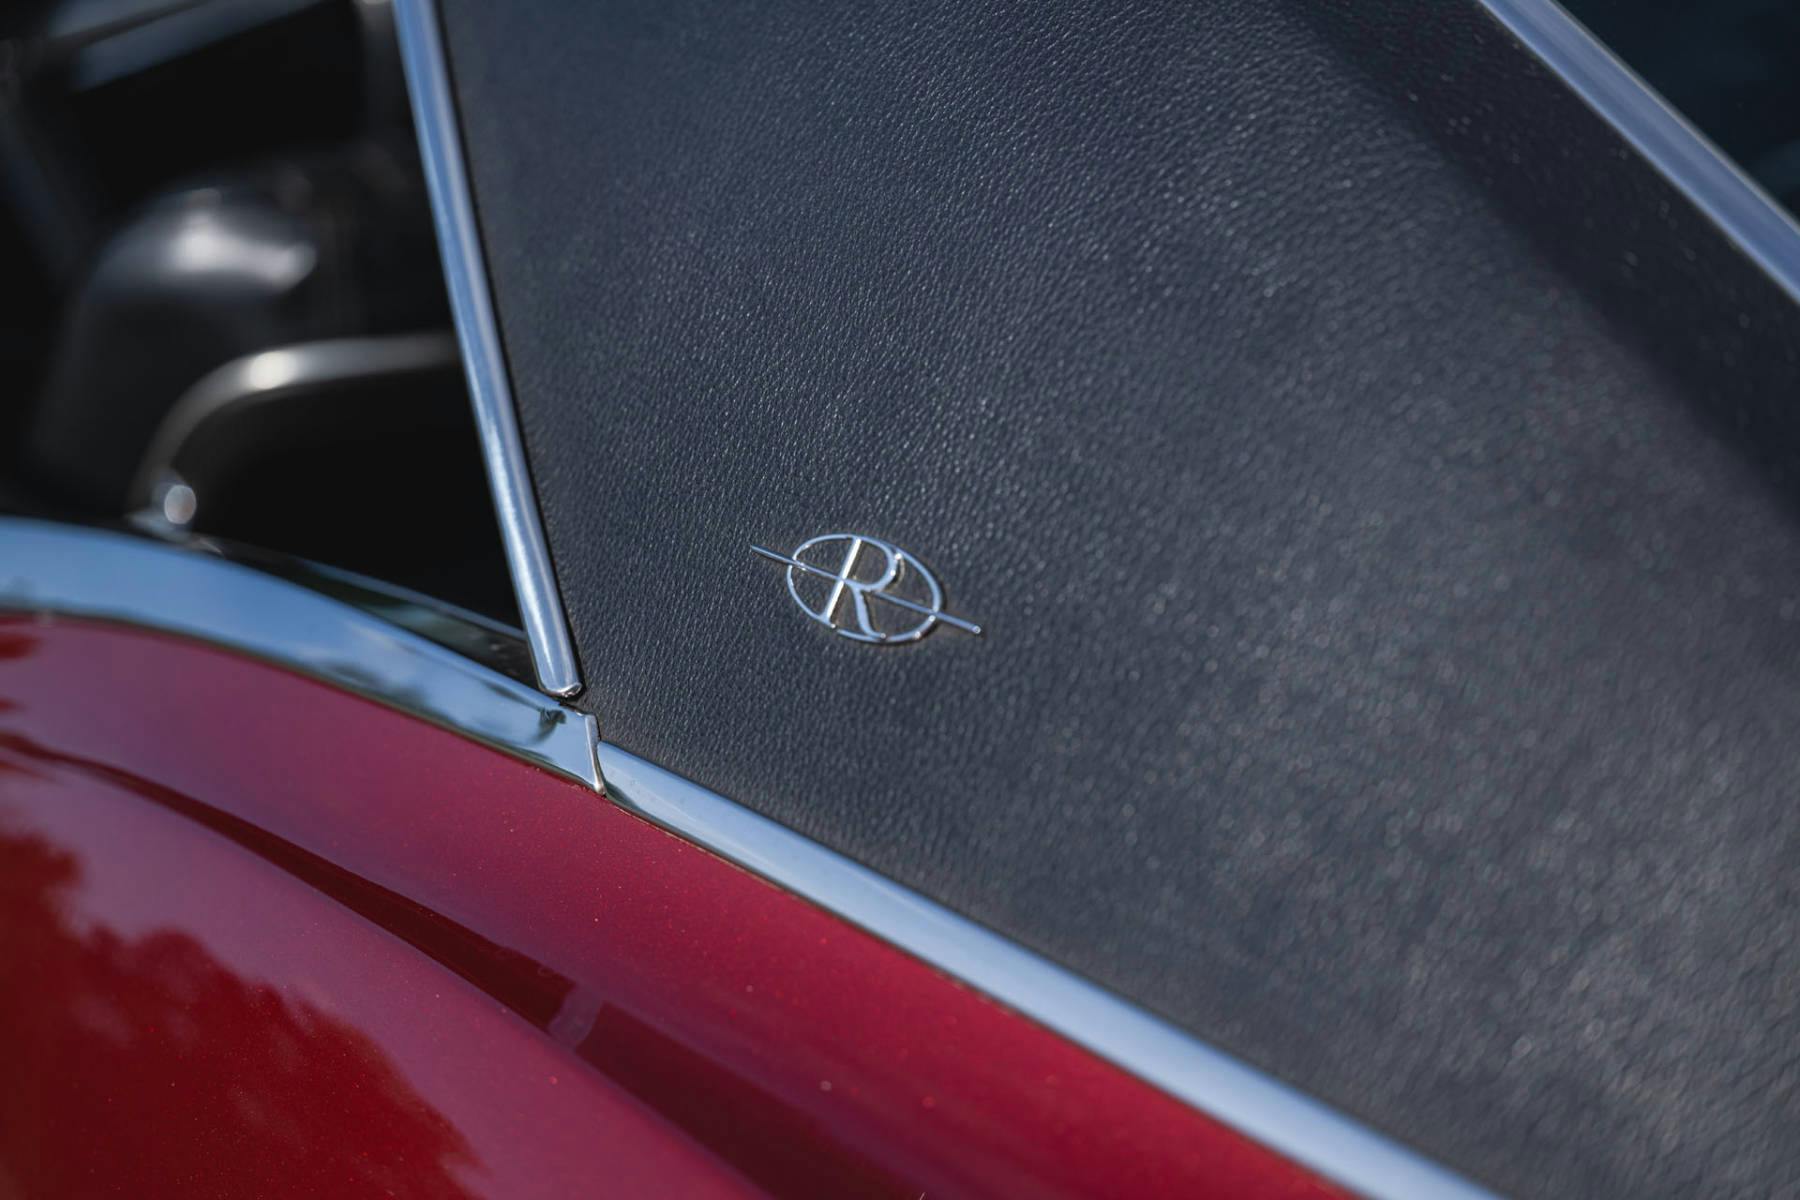 1967 Buick Riviera top emblem